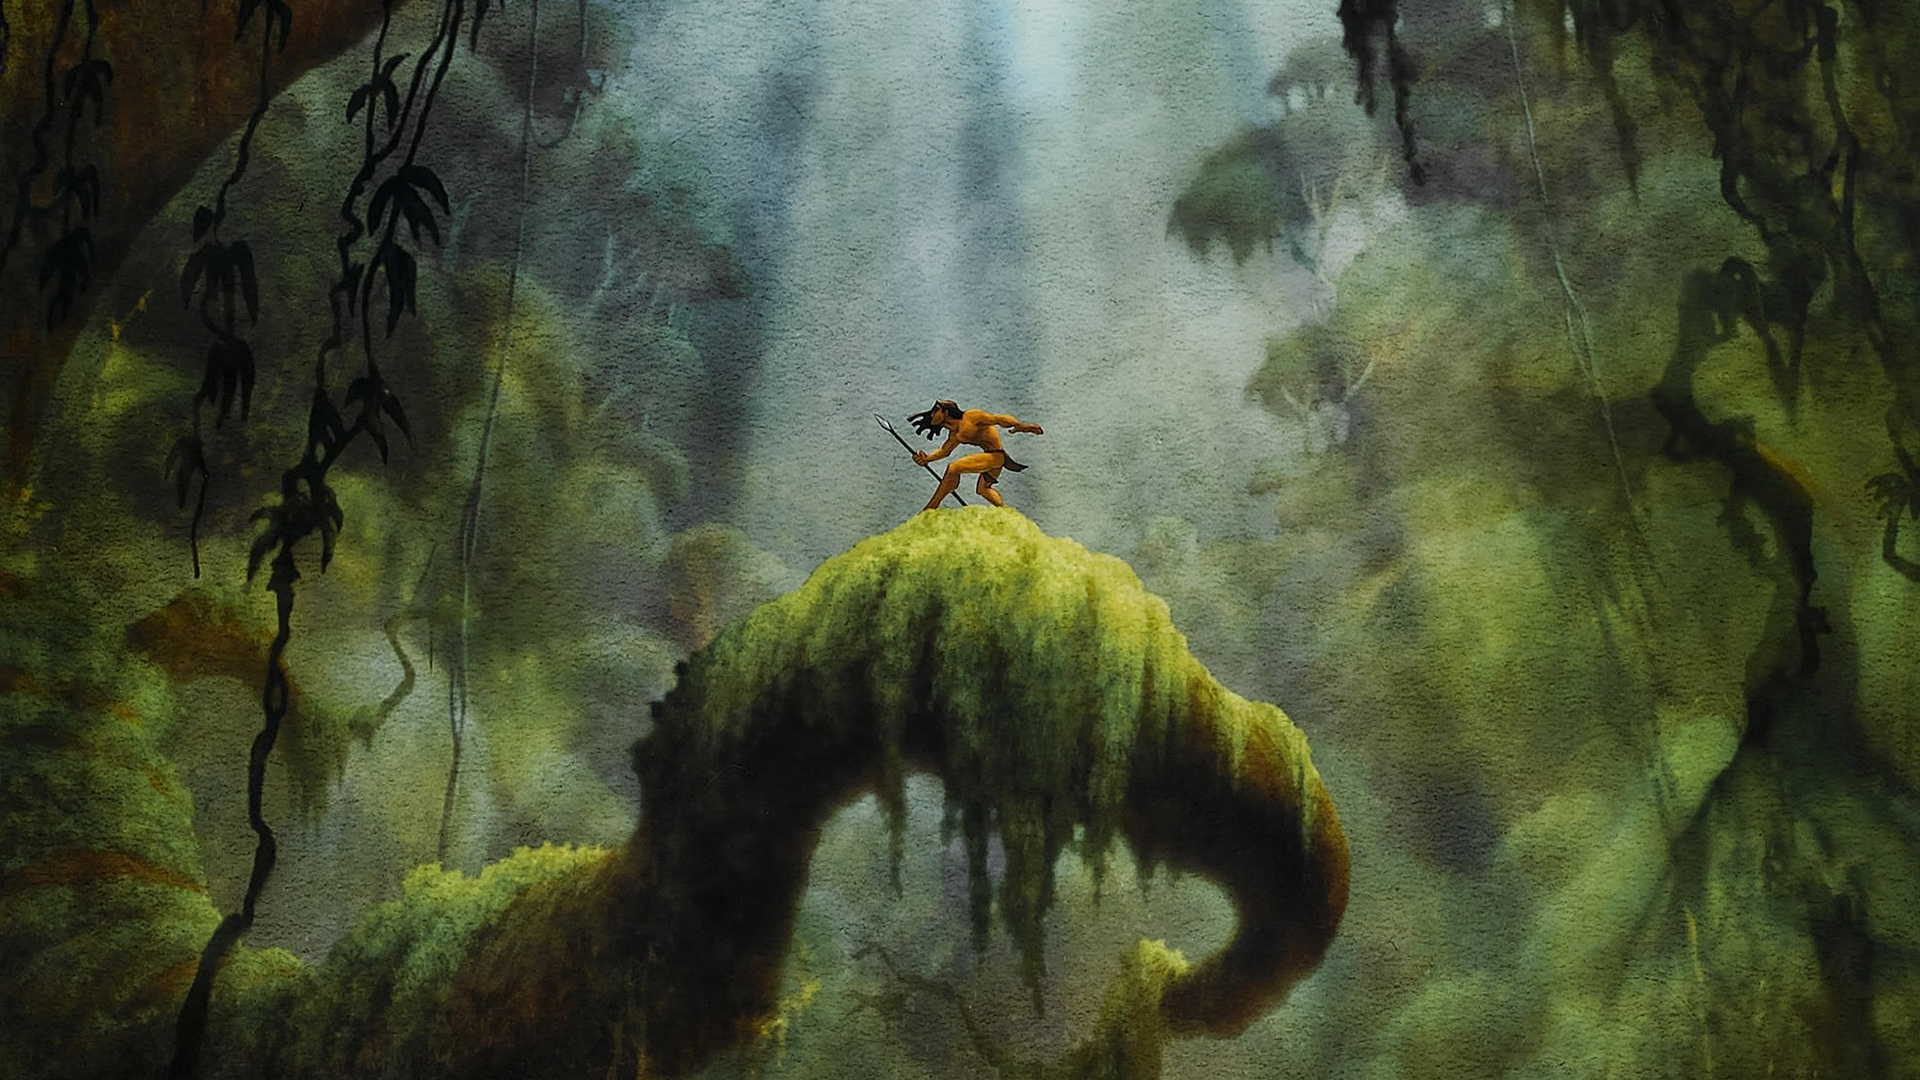 دانلود انیمیشن Tarzan 1999